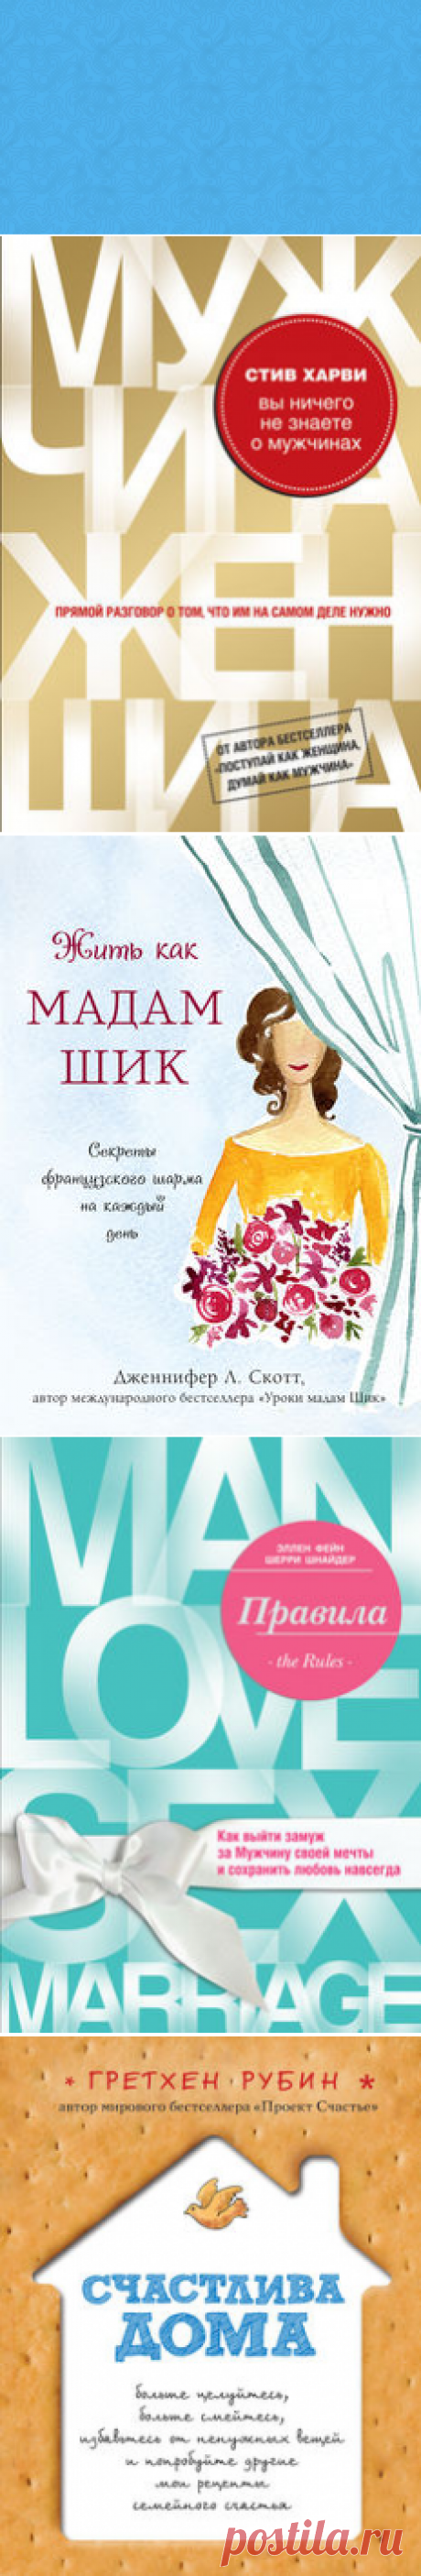 Полка Для женщин, Екатерина Зайцева — Bookmate